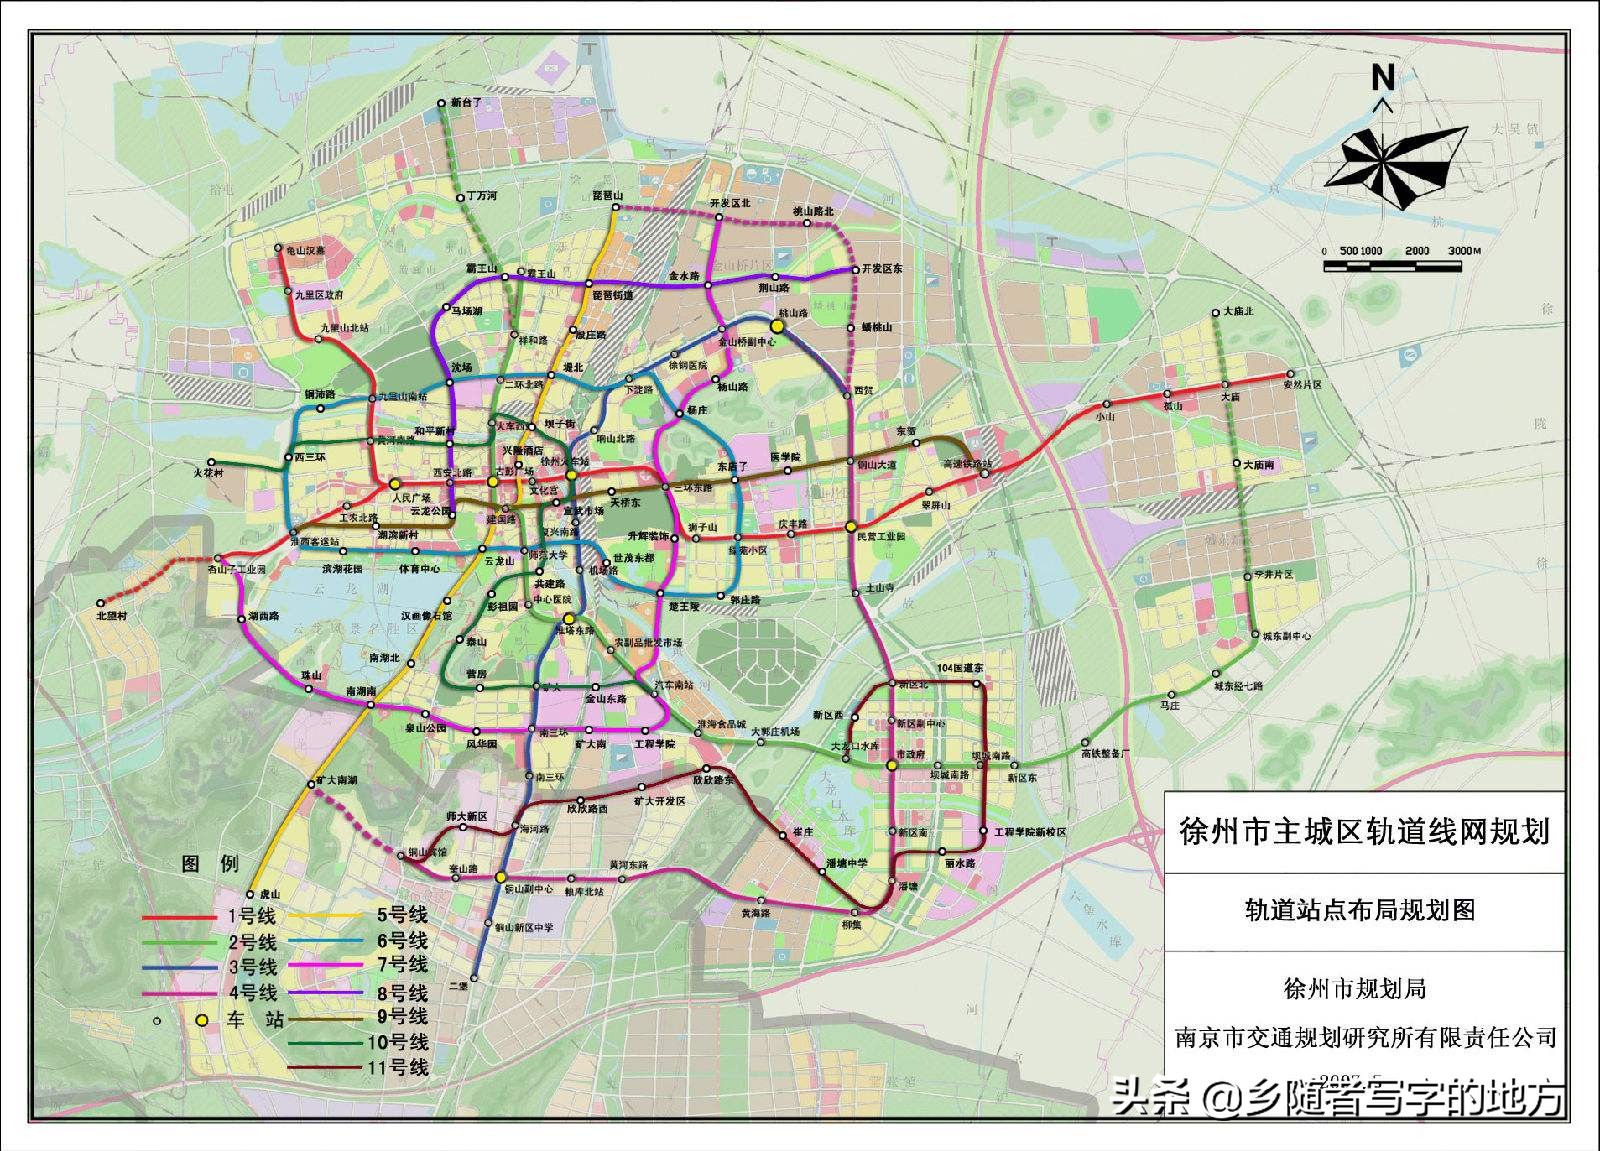 江苏徐州：“两只手”发力助力“碳达峰、碳中和”！老工业城市的绿色转型之路 - 中国徐州网